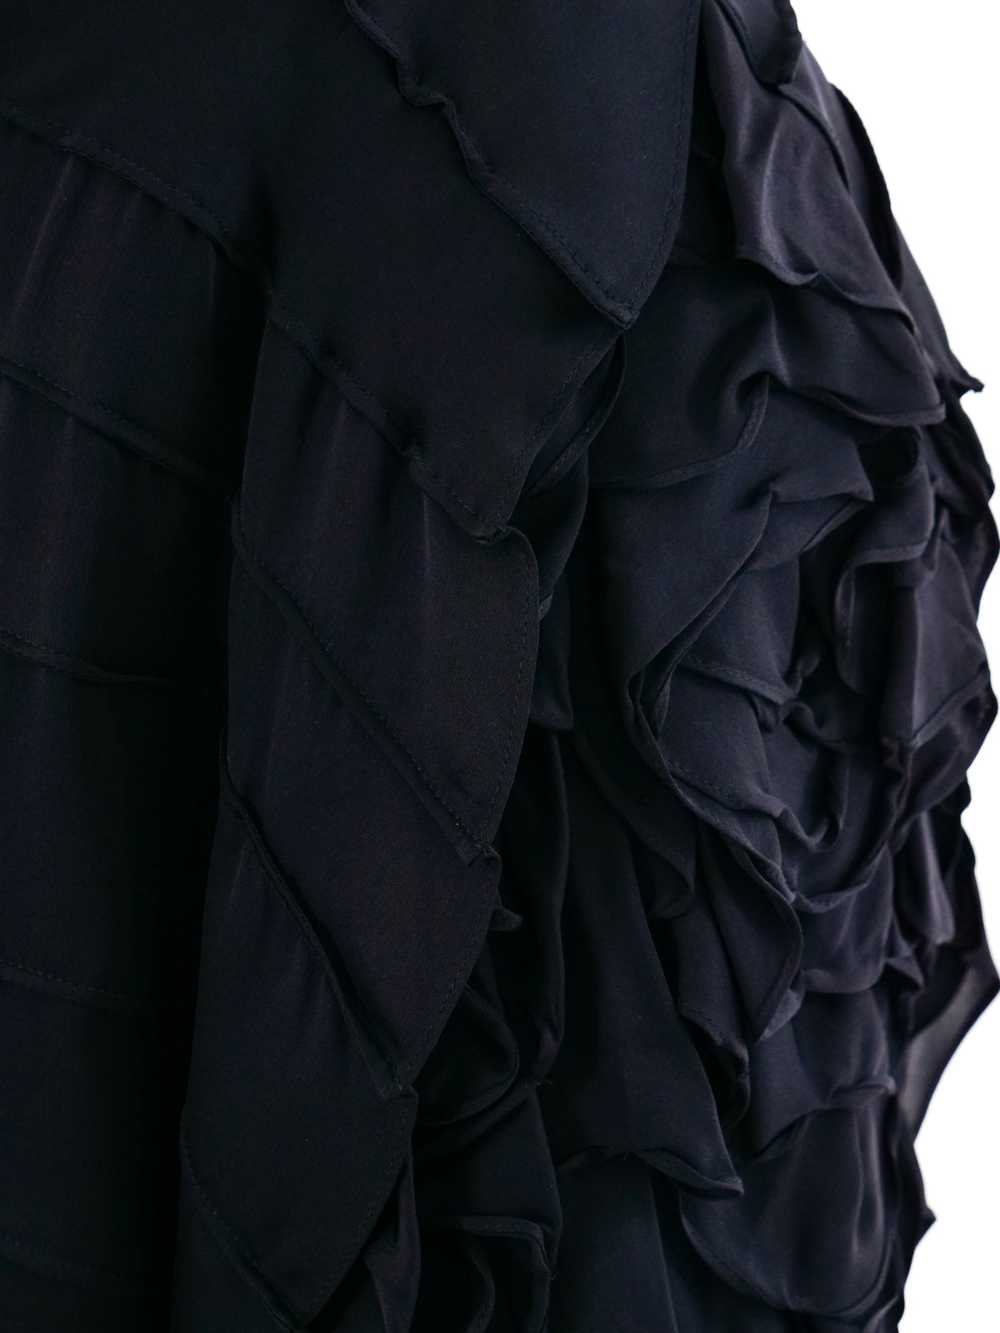 Yves Saint Laurent Ruffled Silk Skirt - image 4